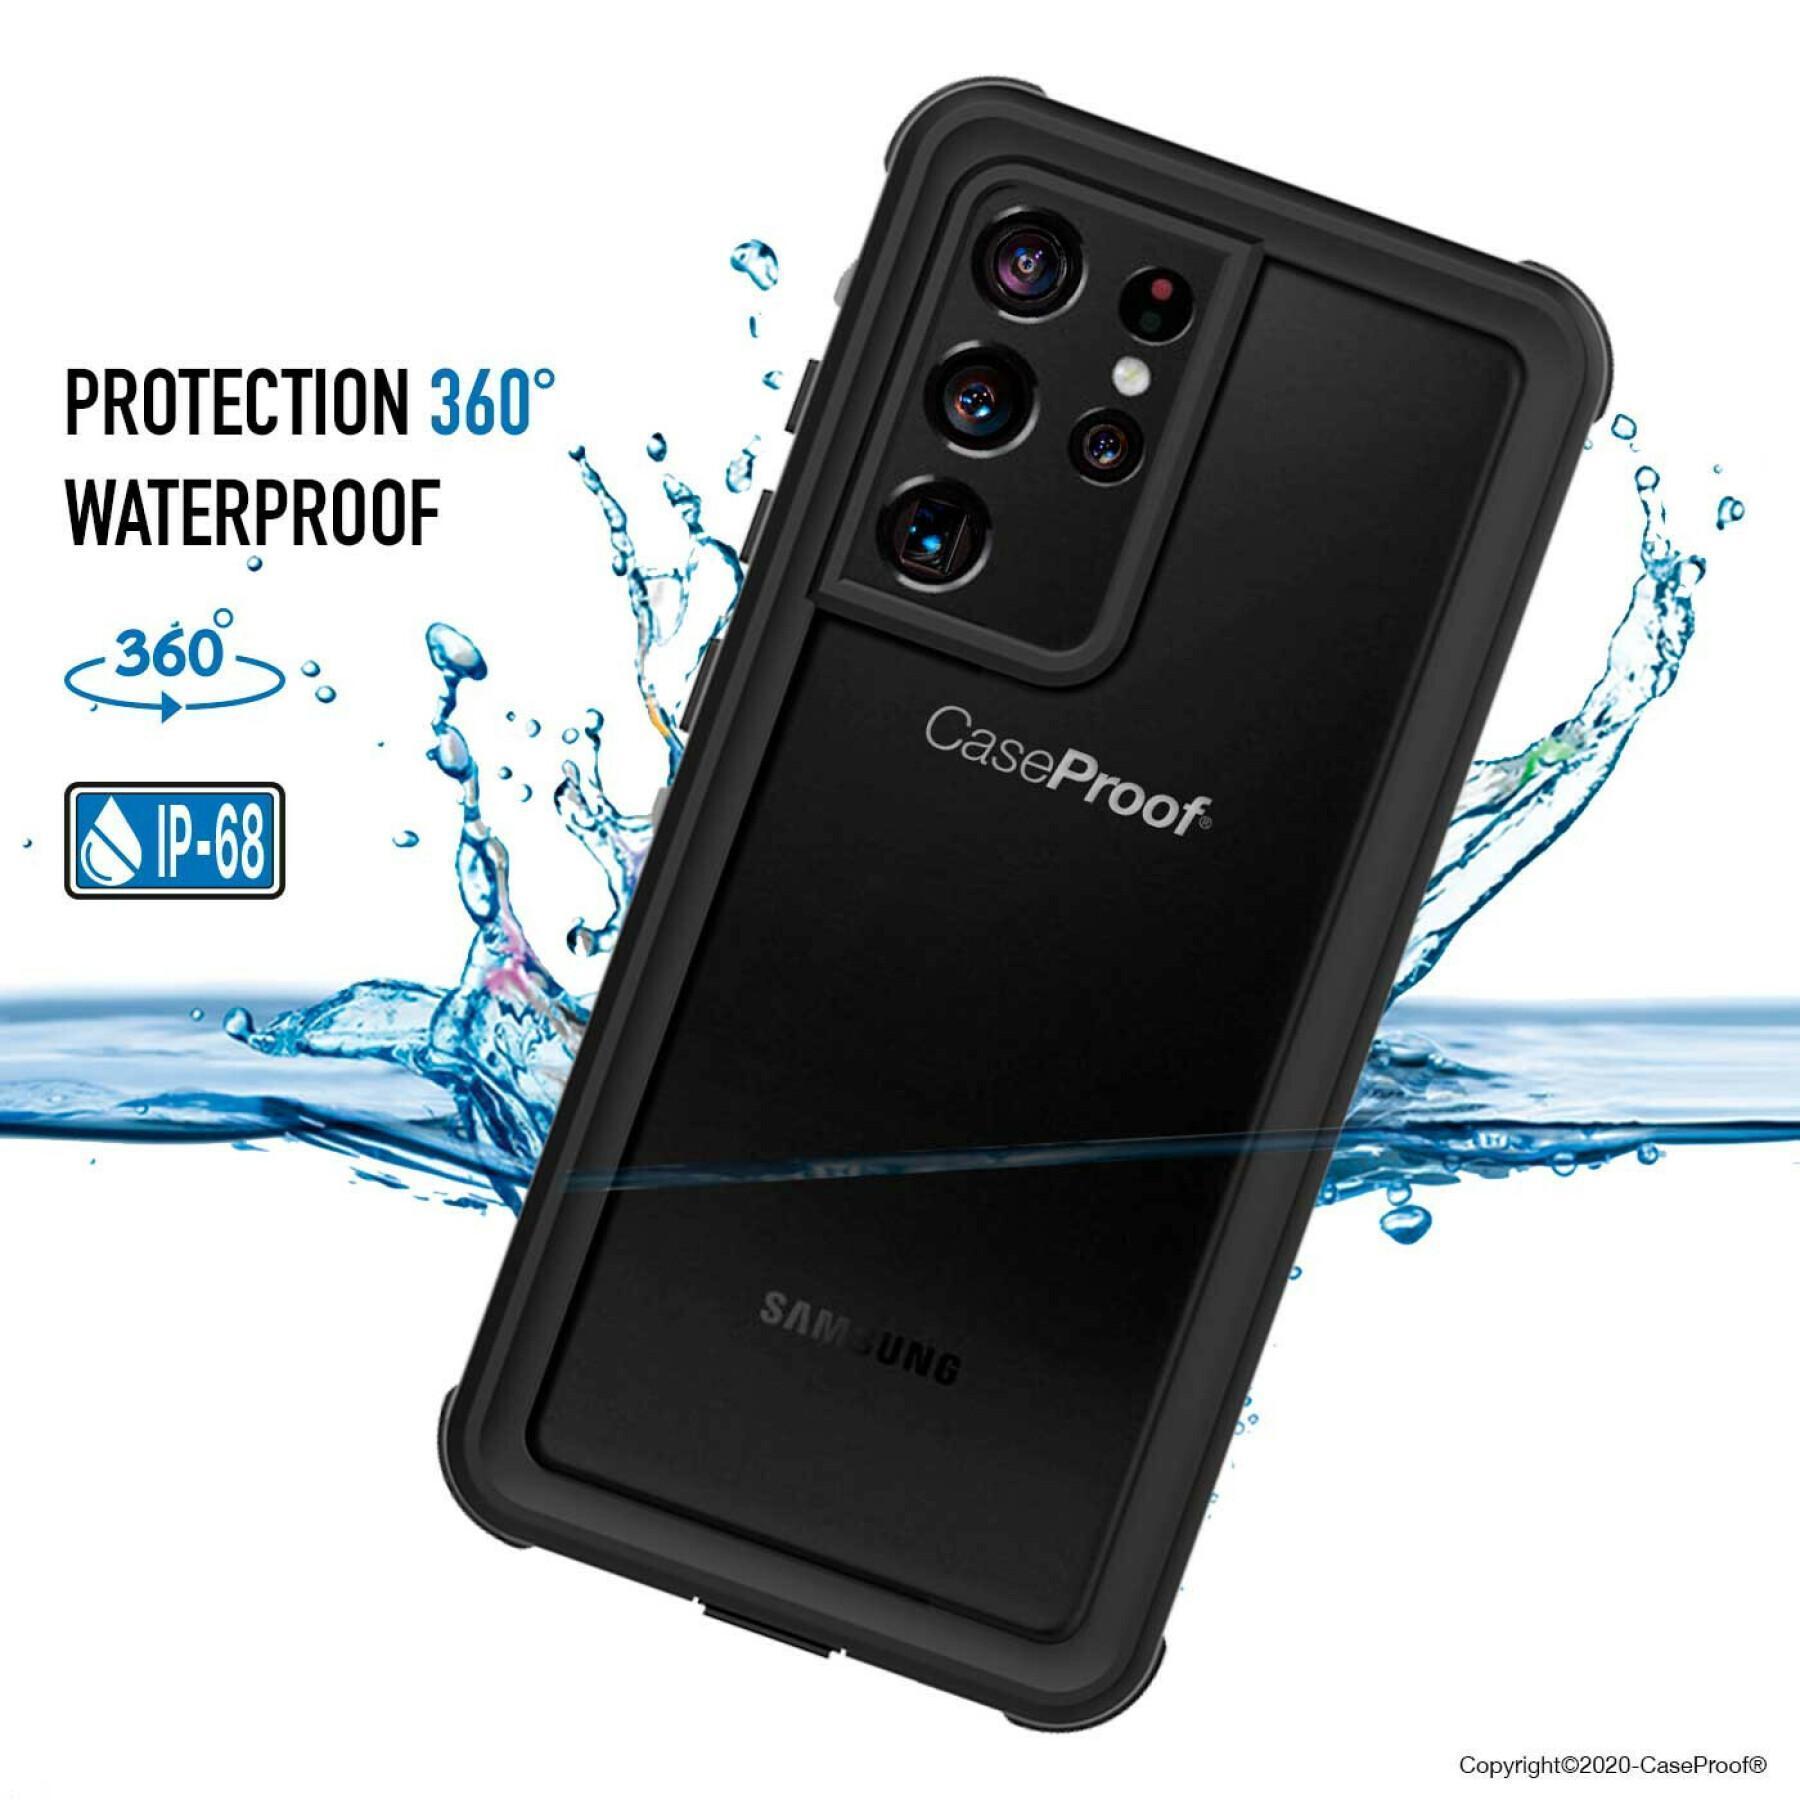 Funda para smartphone samsung galaxy s21 ultra 5g resistente al agua y a los golpes CaseProof